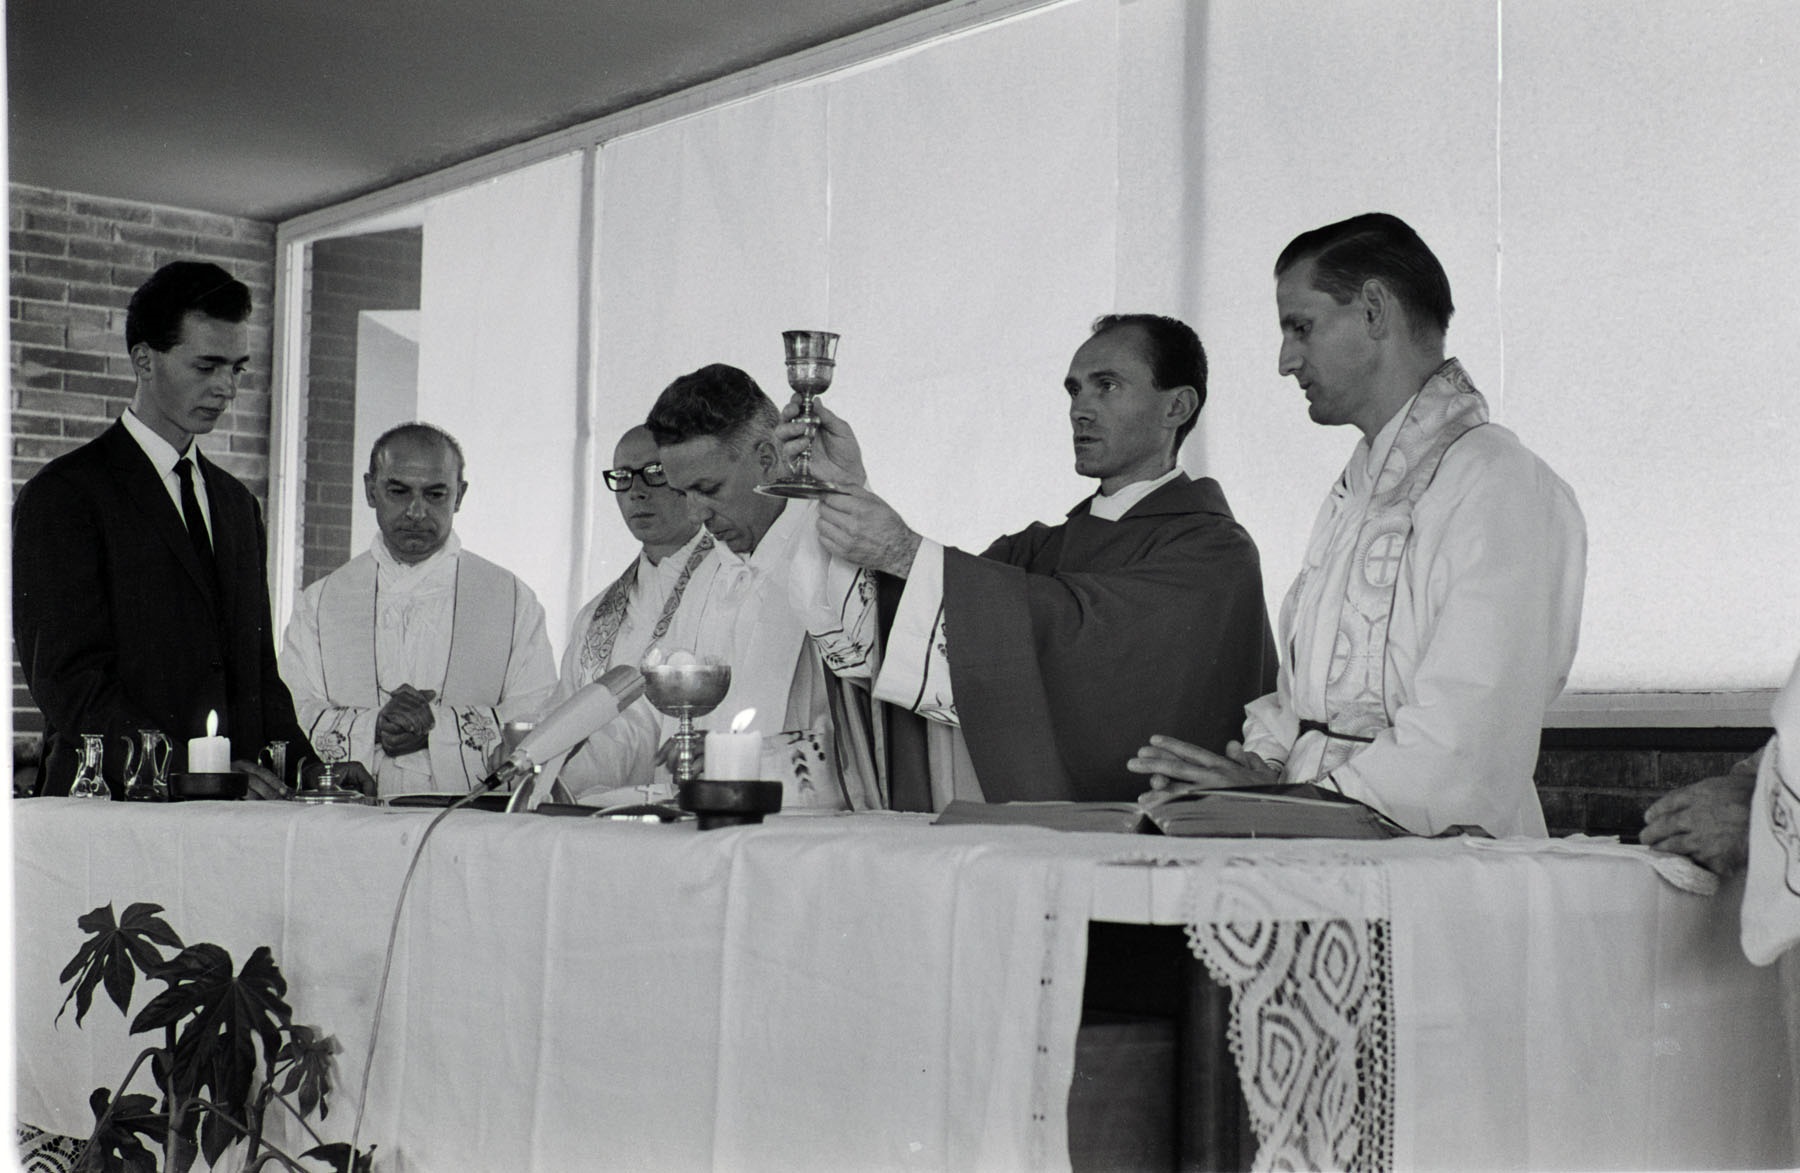 Da sinistra : Aurelio Lagorio, Antonio Petrilli, Guido Brini, Aldo Fons Stedile, Maras e Marco Tecilla